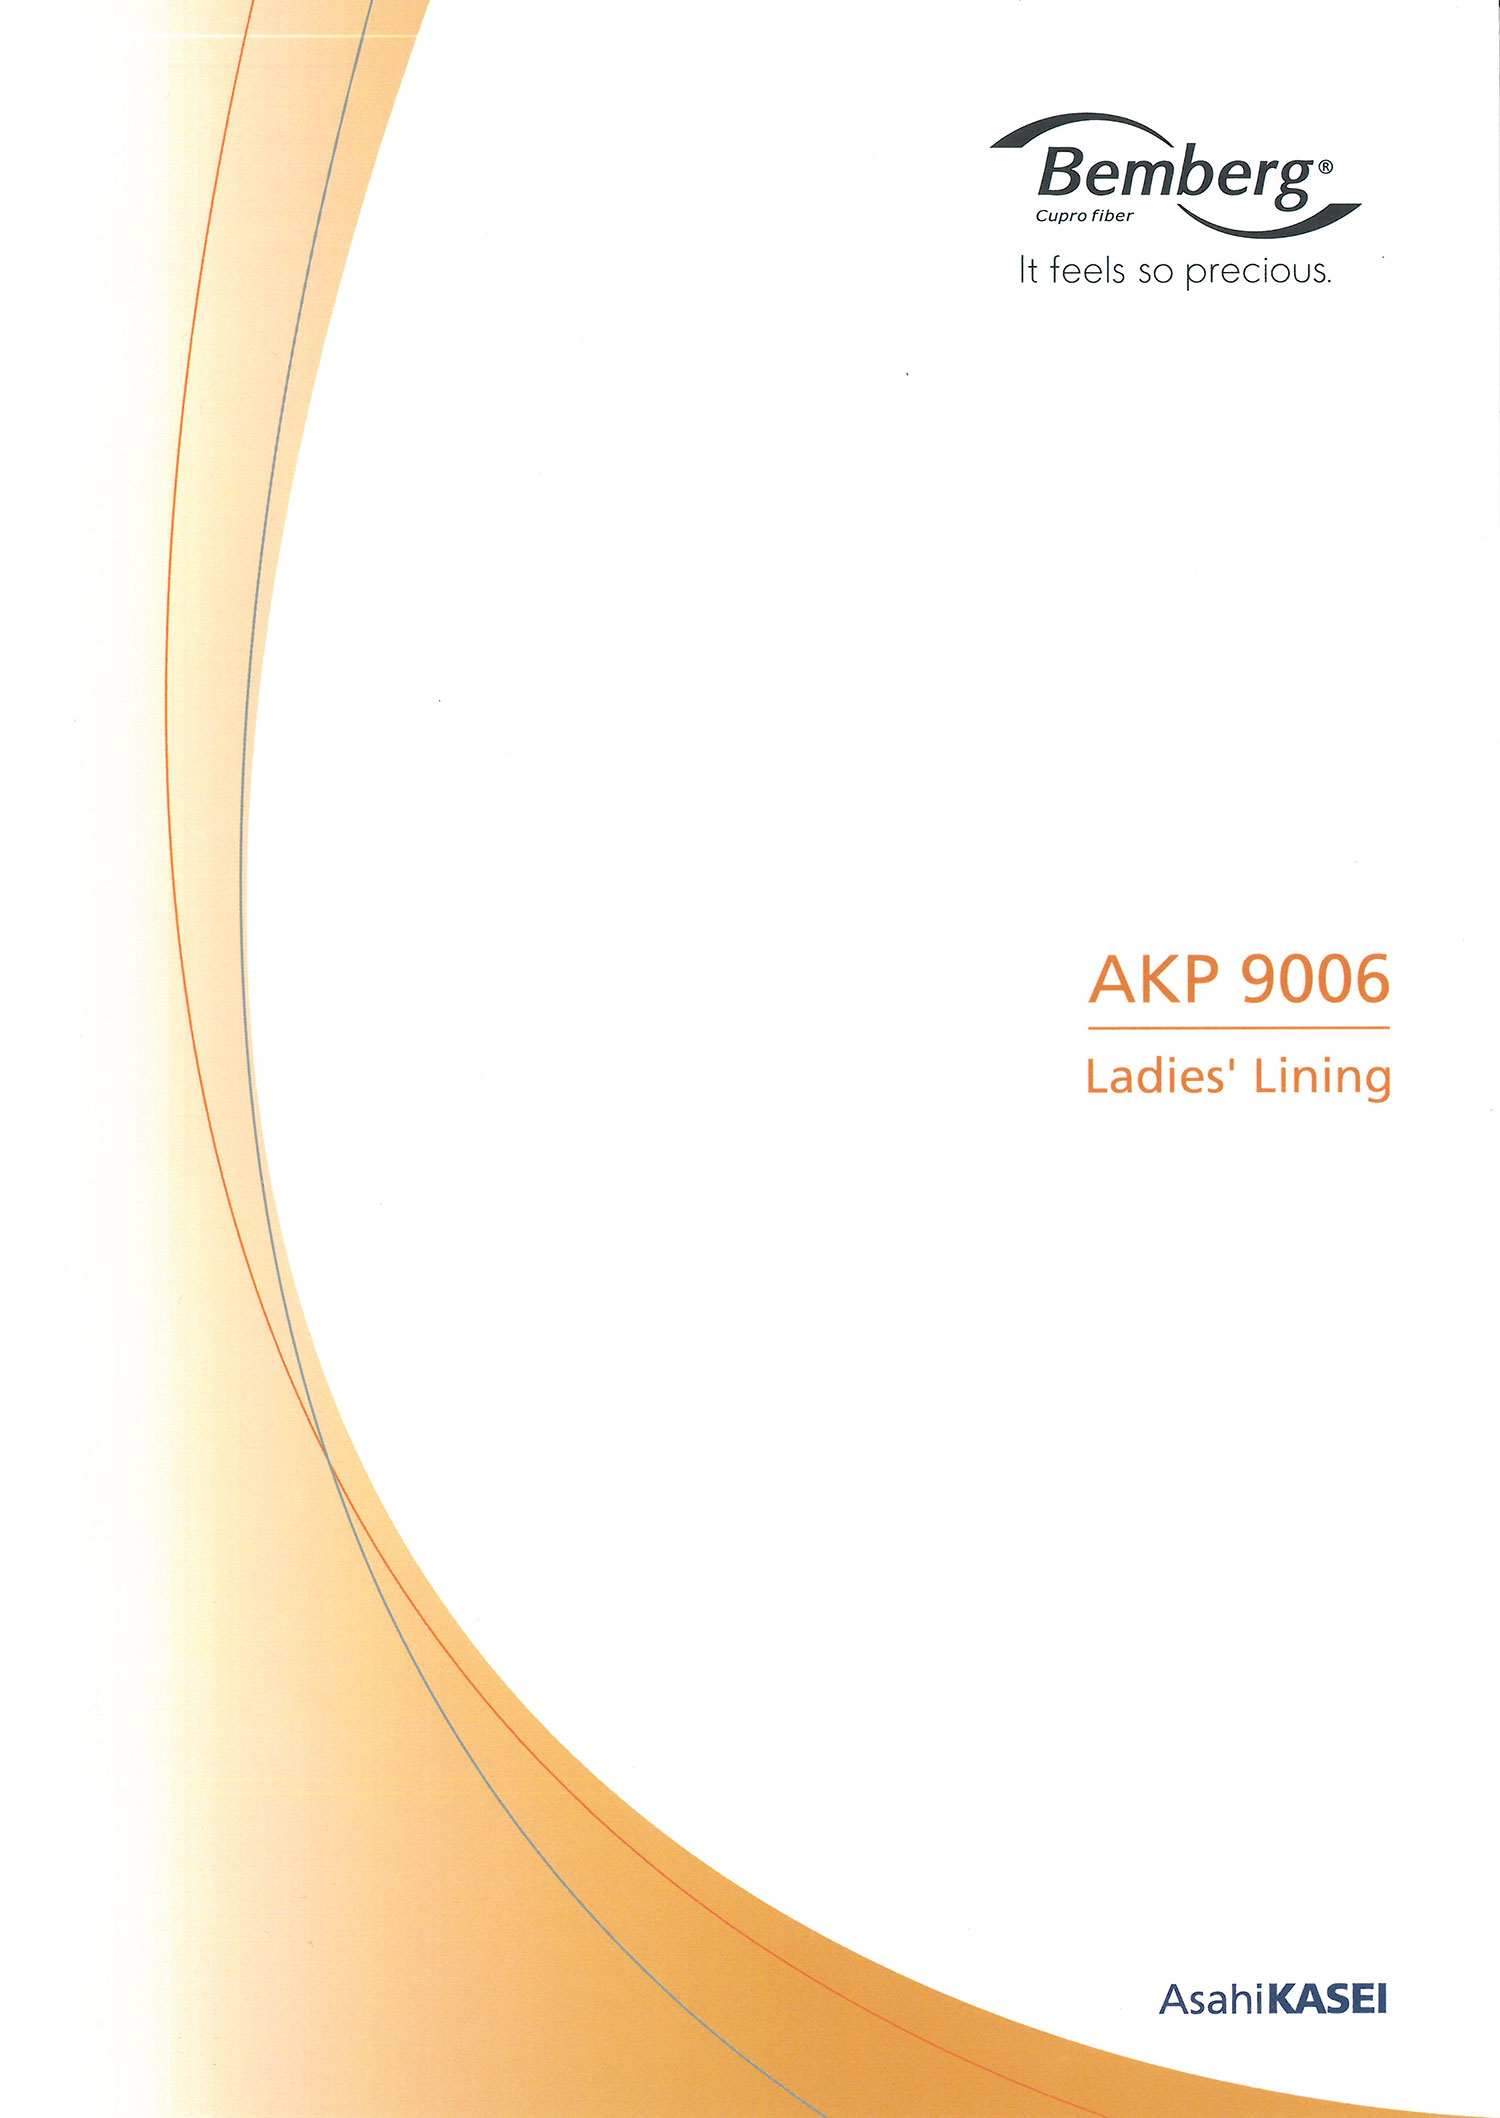 AKP9006 ベンベルグ裏地 ラグジュール 旭化成